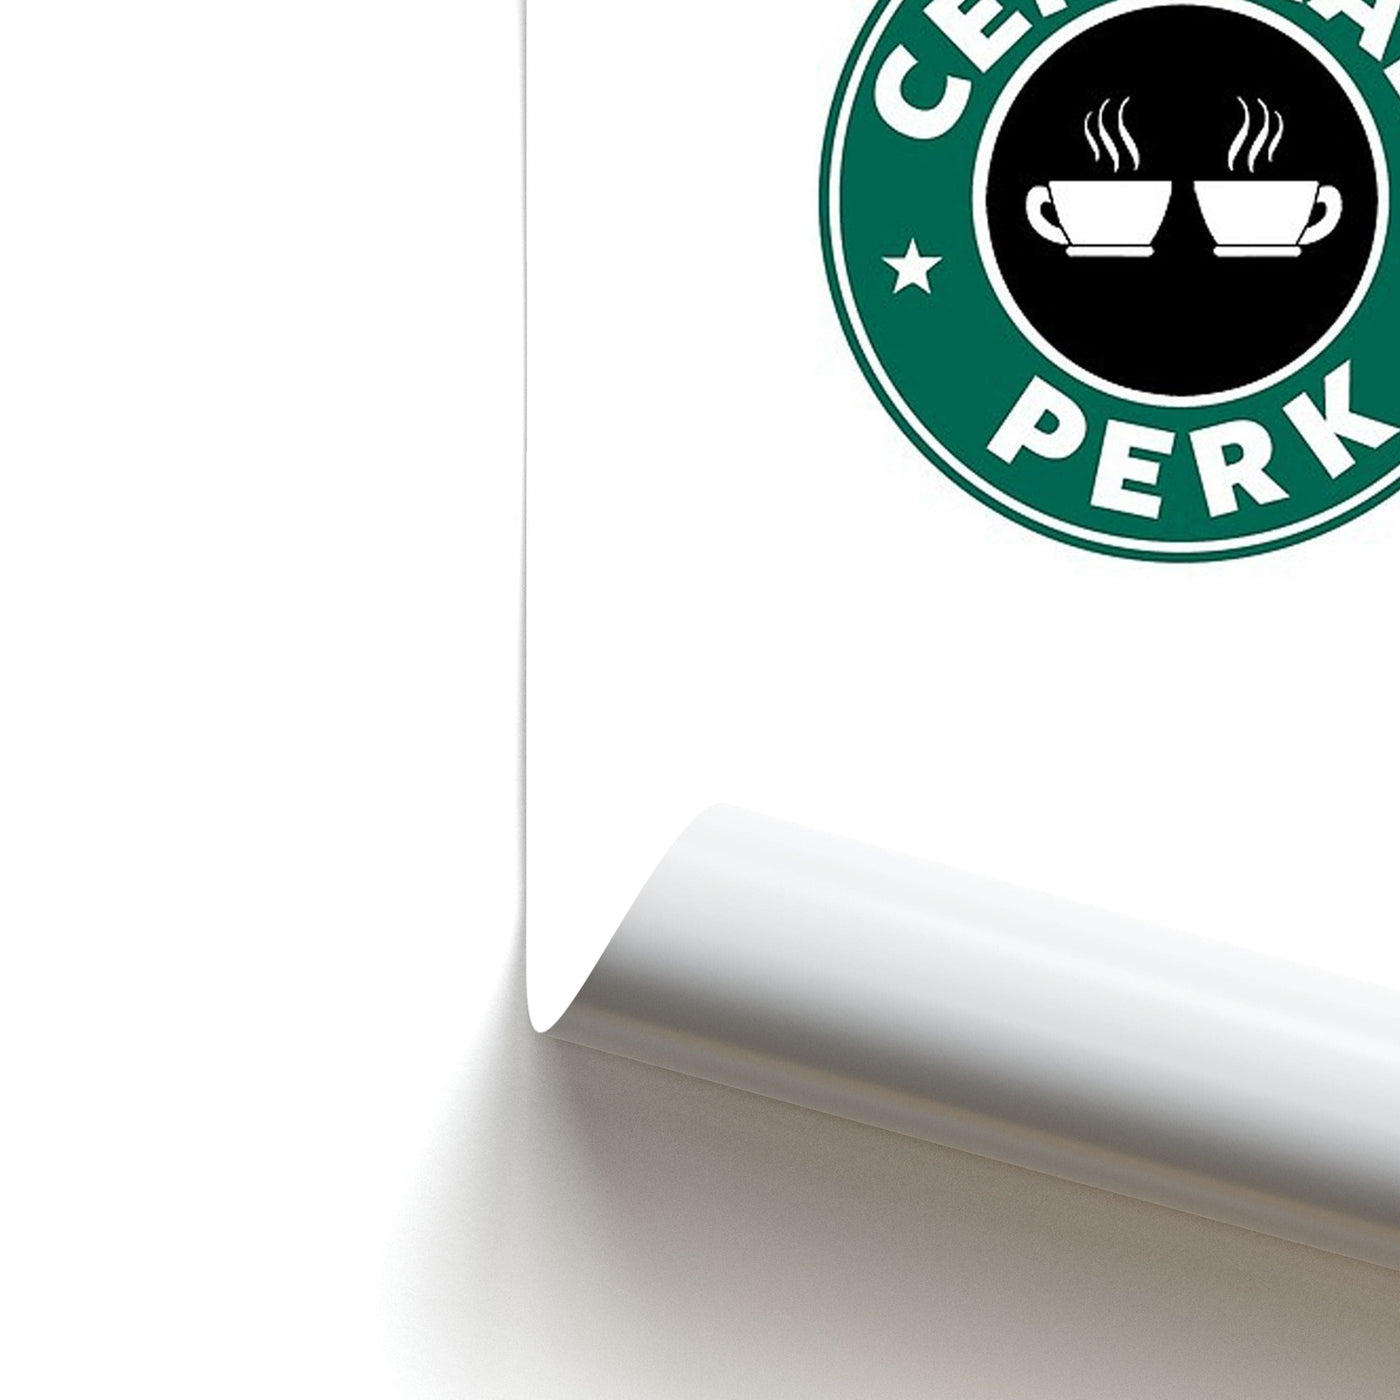 Central Perk - Starbucks Logo - Friends Poster